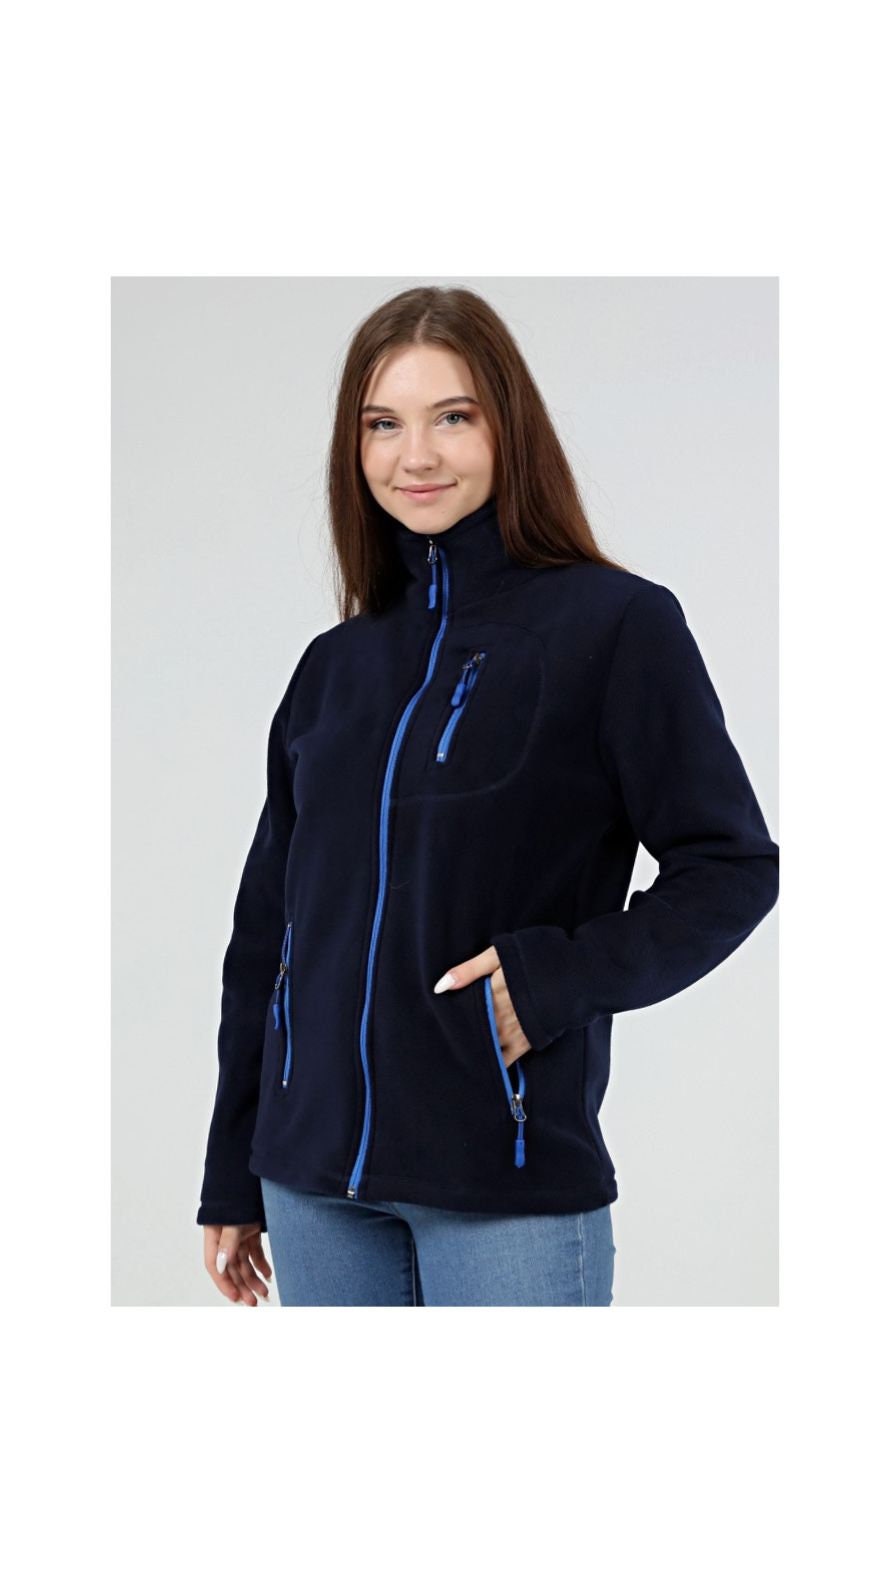 Buy Womens Fleece Jacket Online In India -  India